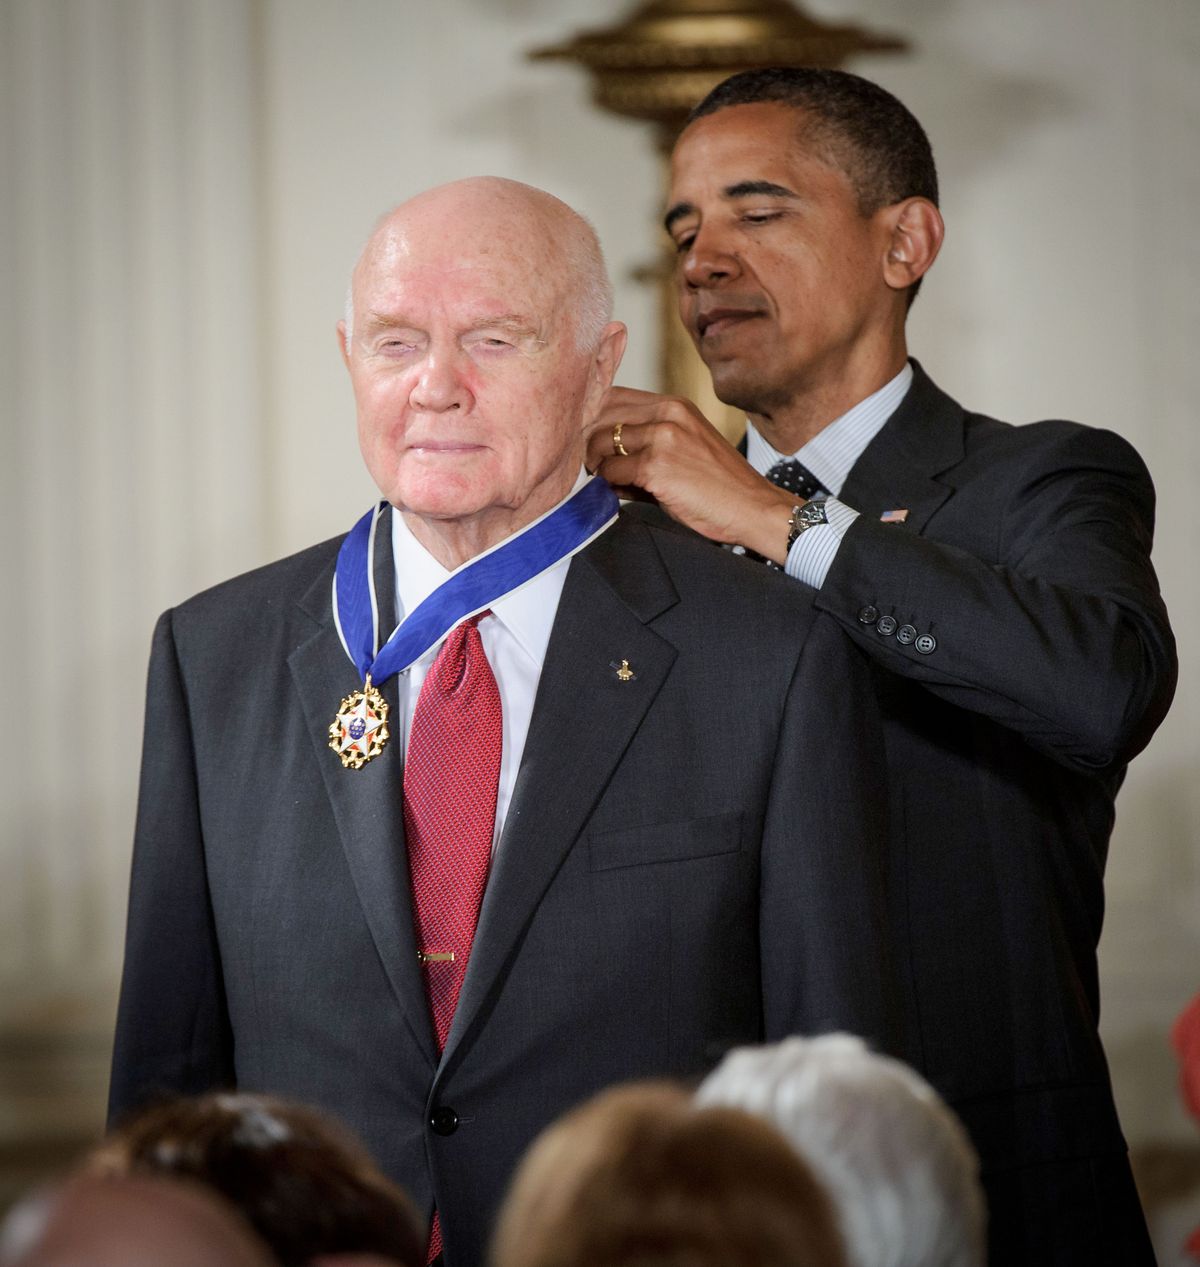 President Obama Awards John Glenn with Medal of Freedom